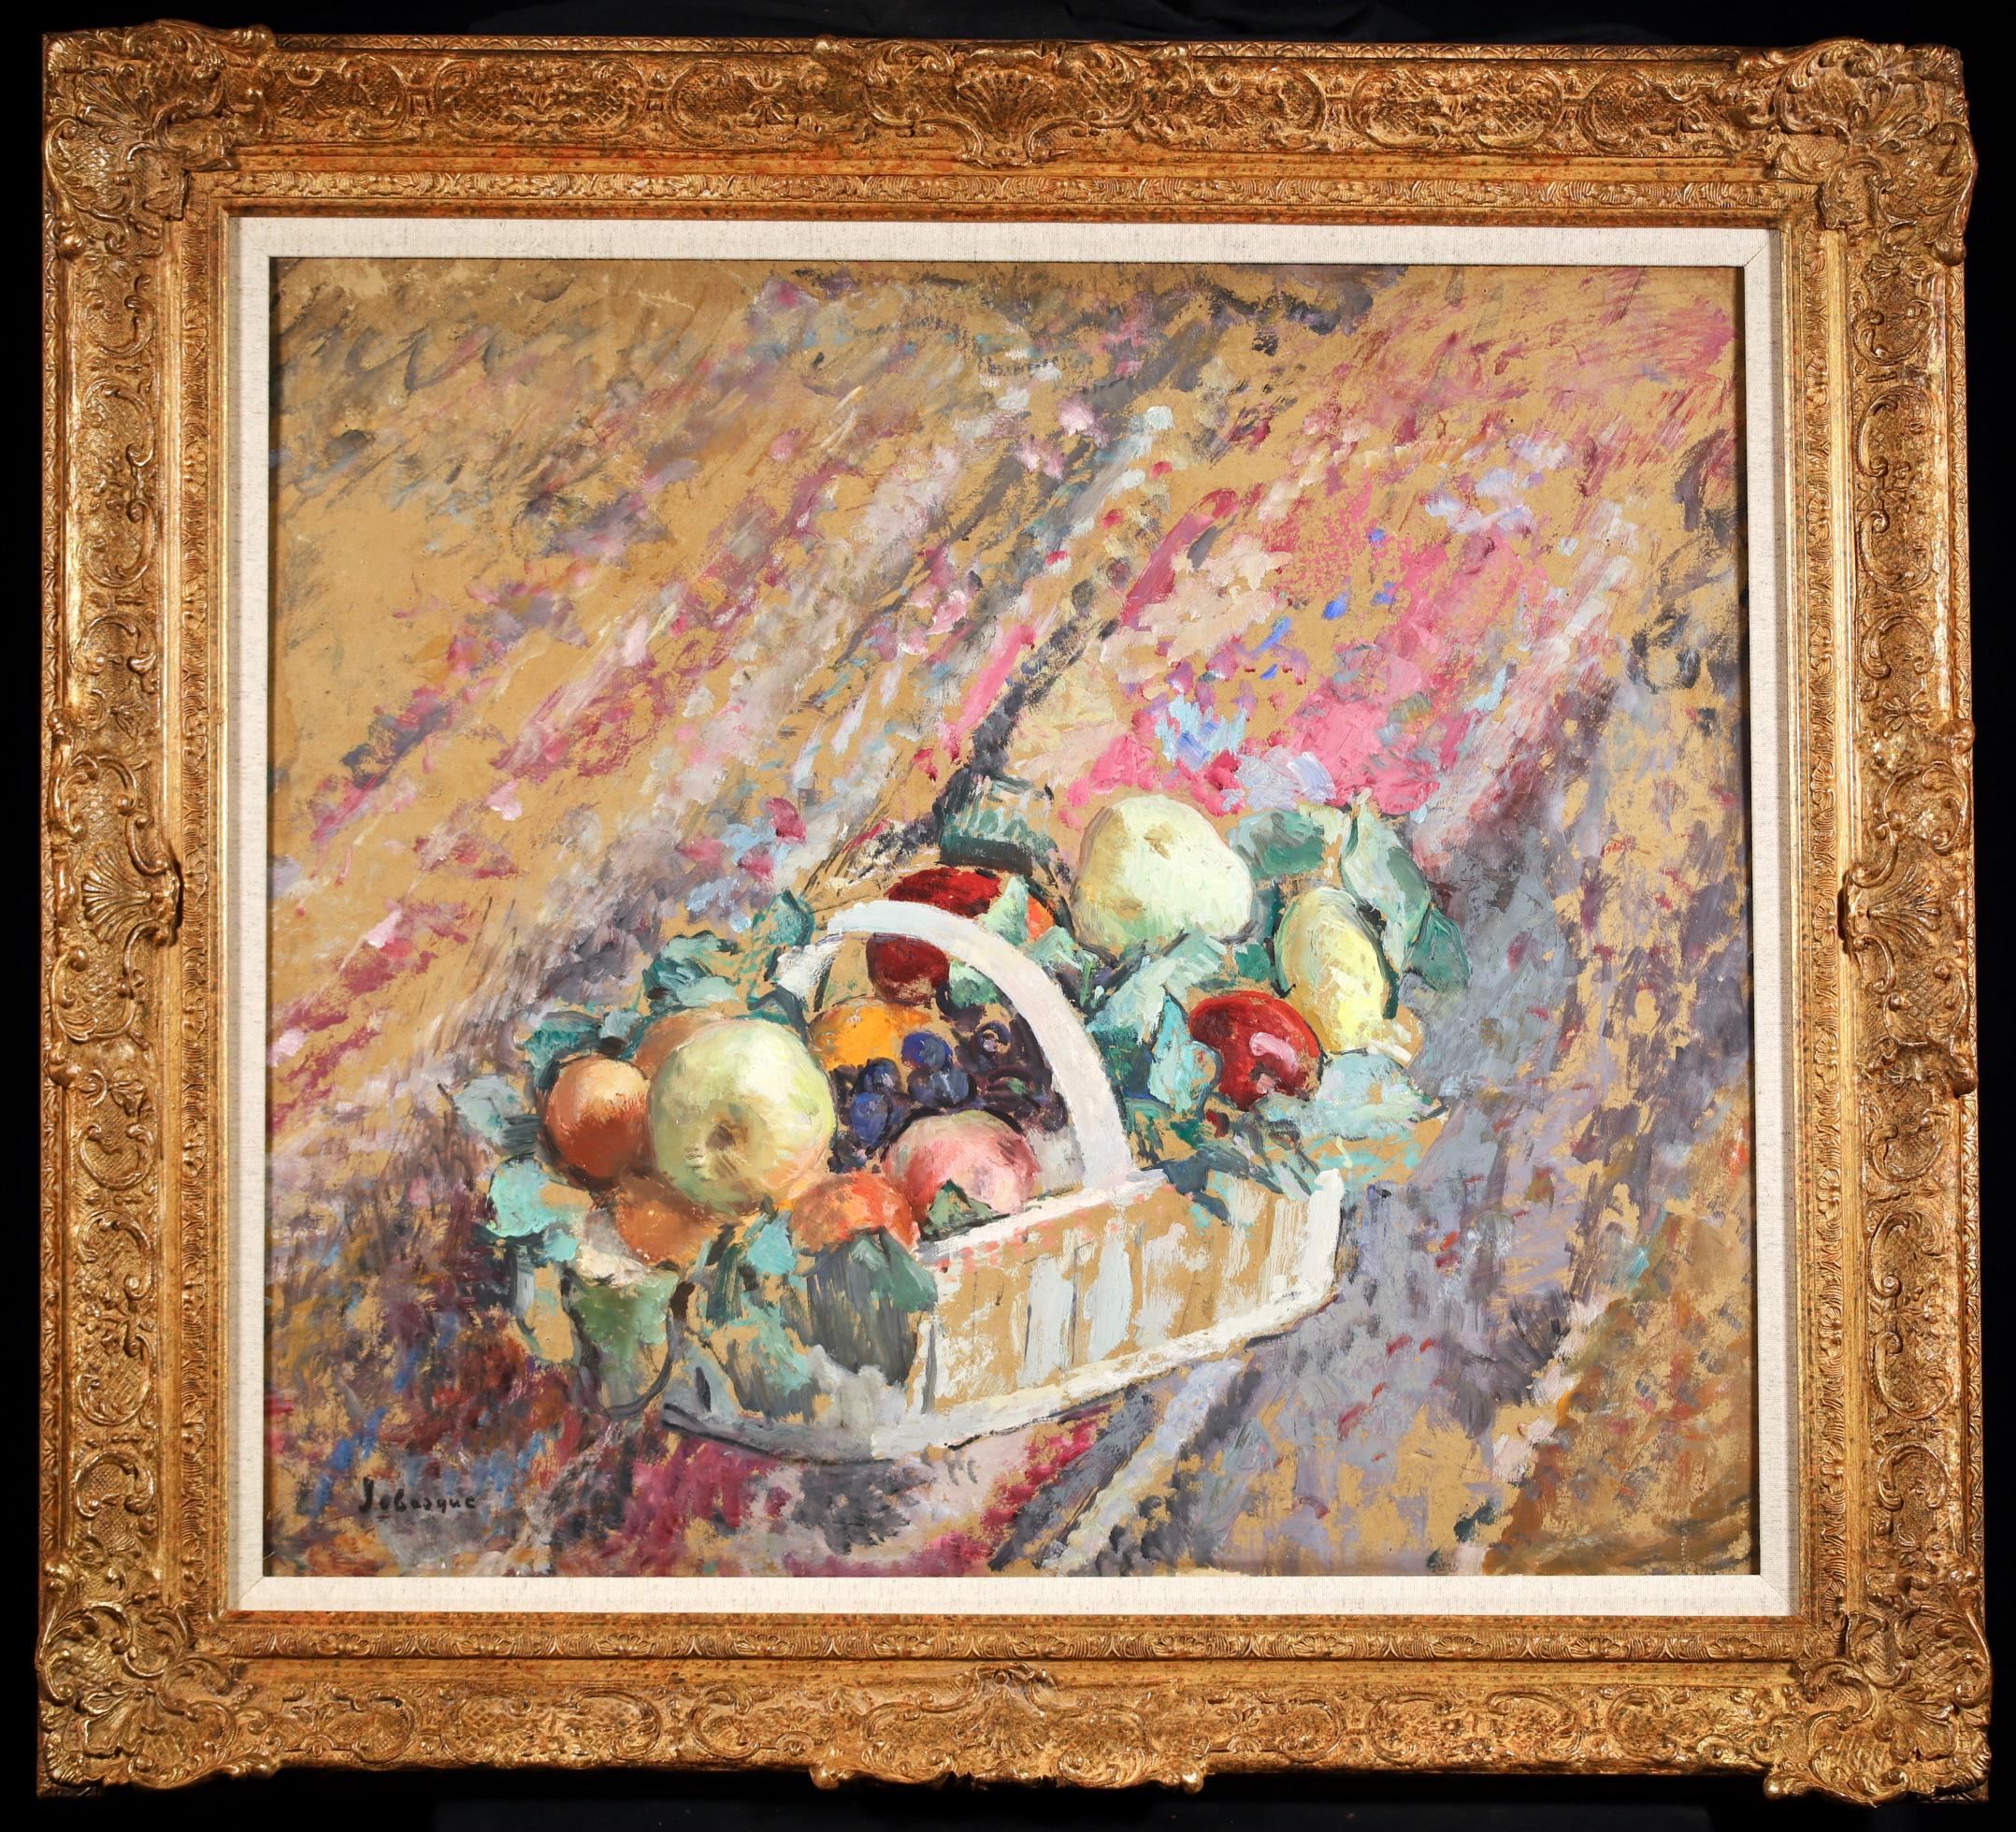 Nature morte à l'huile sur panneau signée vers 1937 par le peintre post impressionniste français Henri Lebasque. L'œuvre représente une corbeille de fruits remplie de pommes, de raisins et d'oranges.

Signature :
Signé en bas à gauche

Dimensions